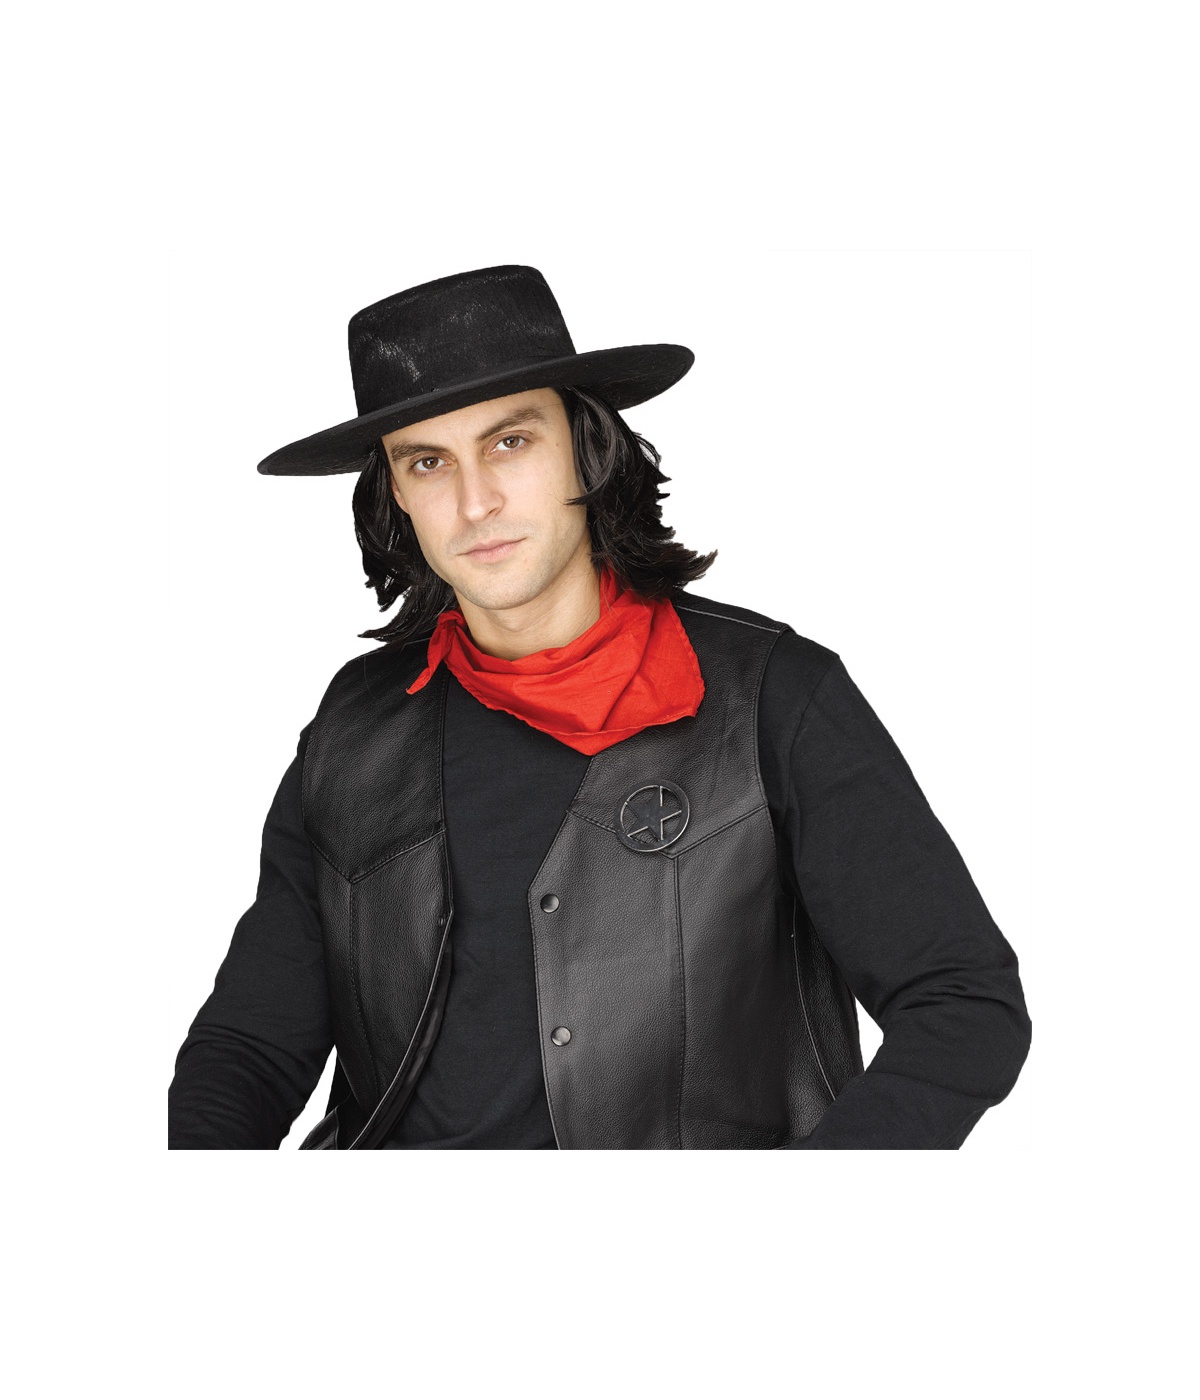 Gunslinger Instant Kit Costume